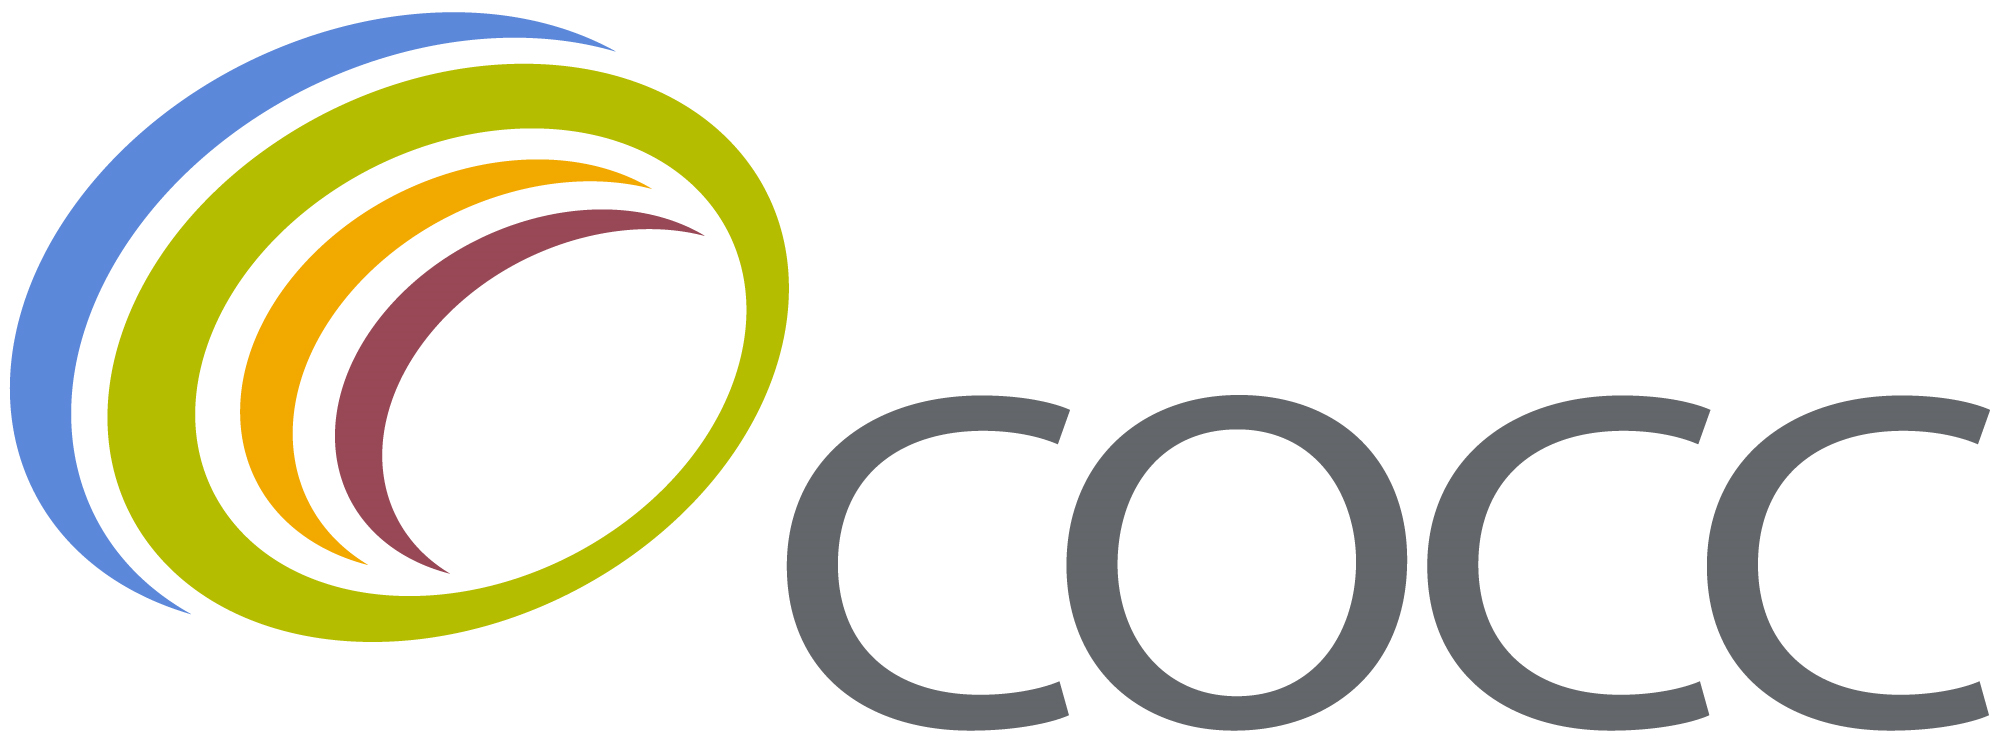 COCC logo